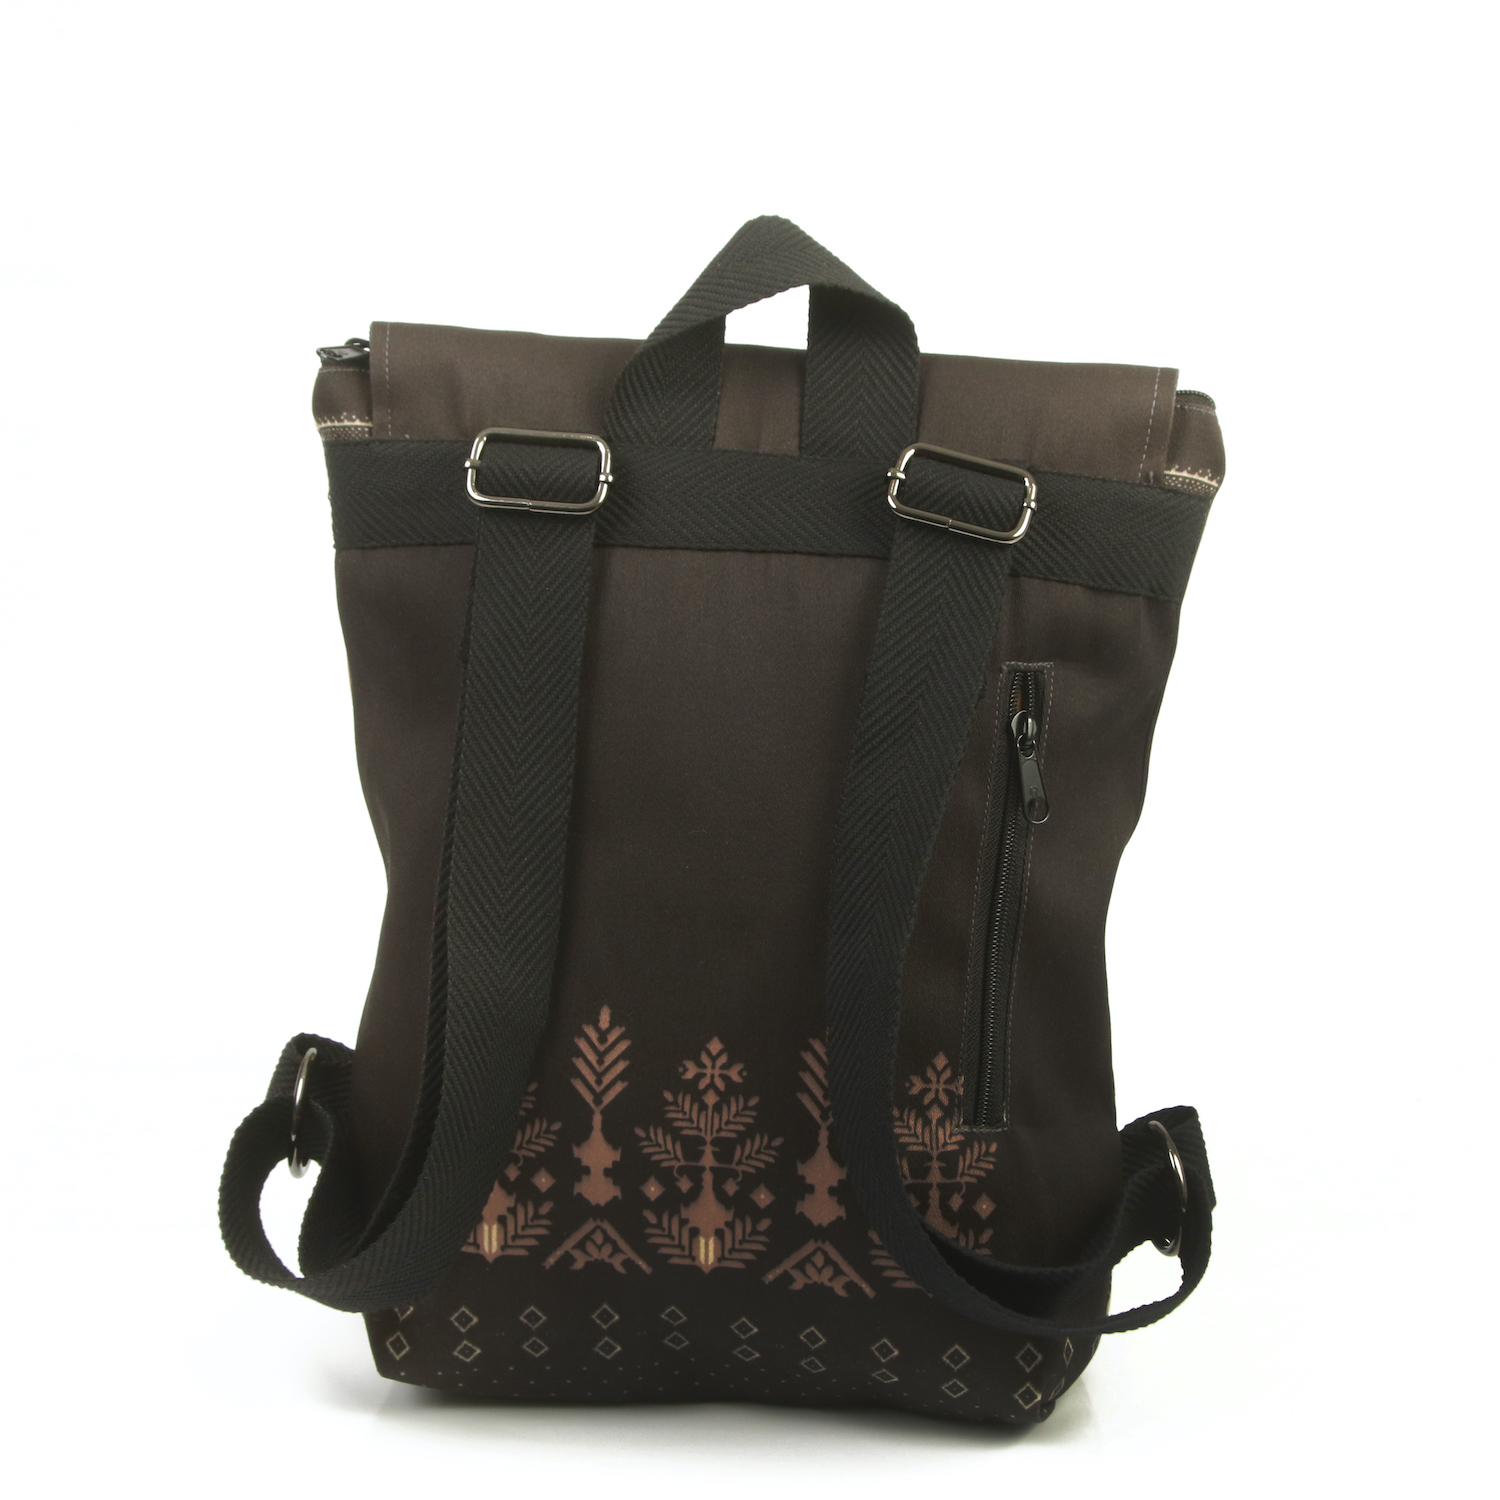 LazyDayz-Designs-Backpack-γυναικείος-σάκος-πλάτης-χειροποίητος bb0701c